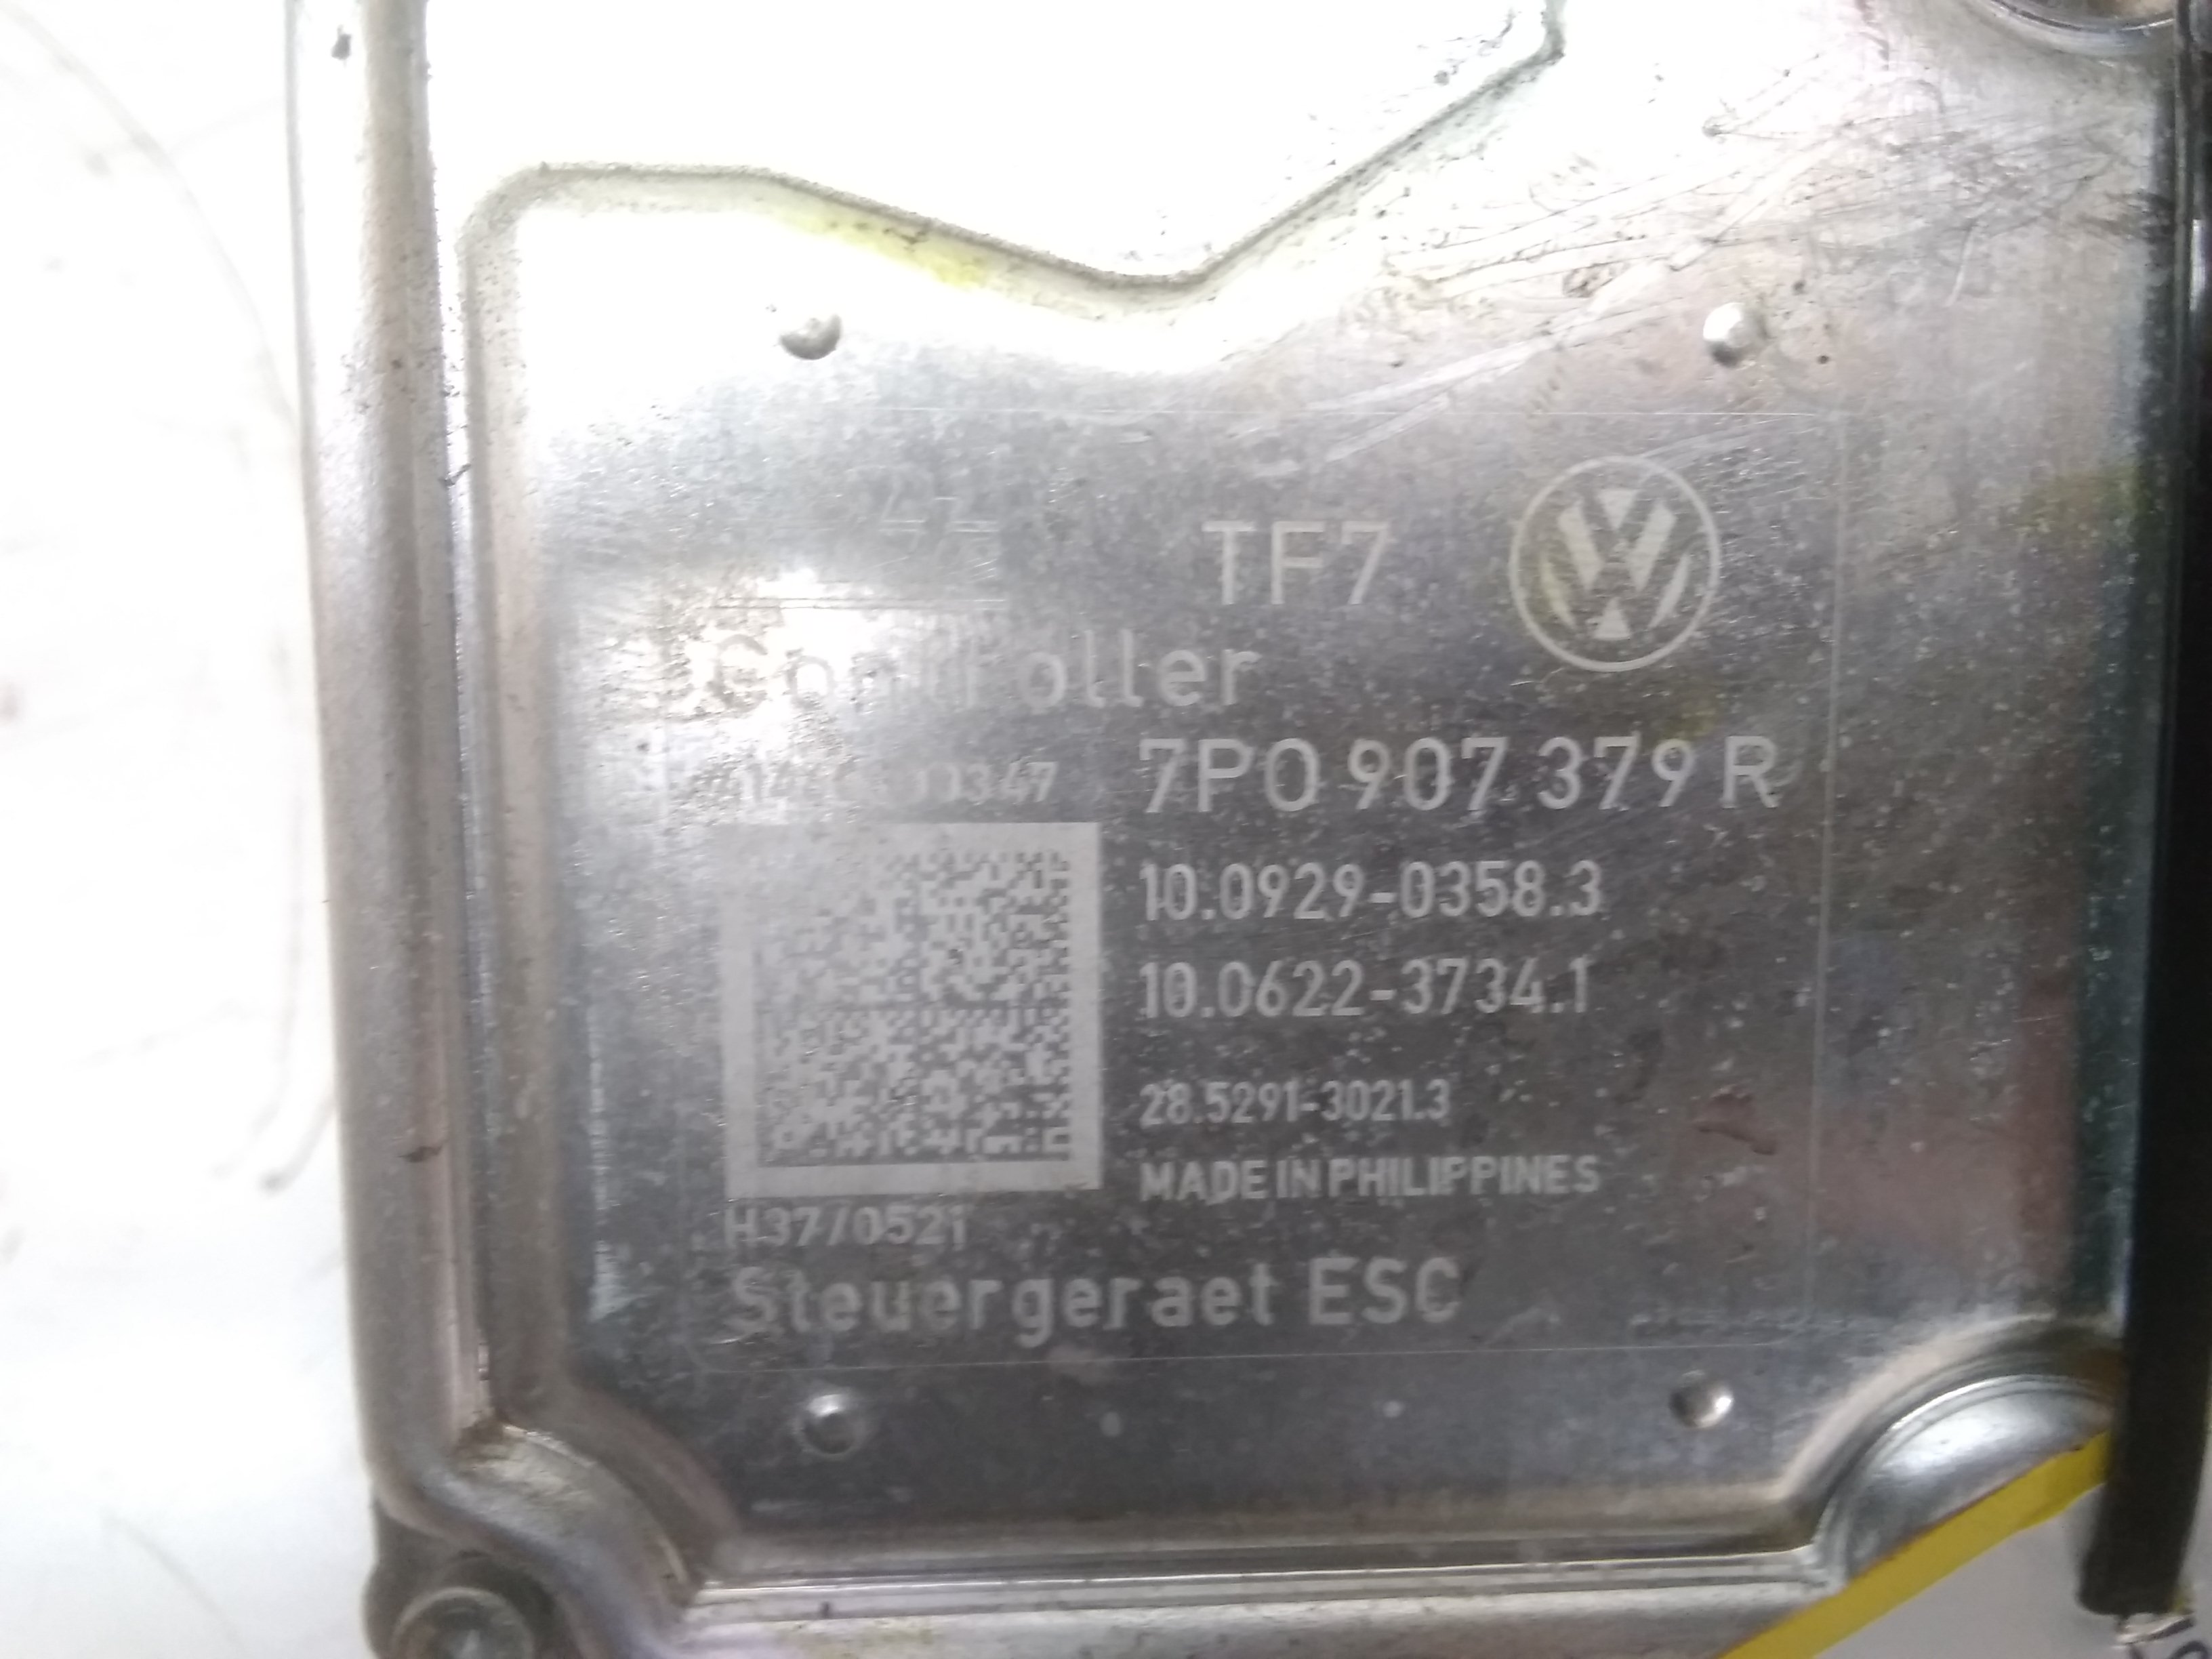 VW Touareg 7P original Hydroaggregat ABS Block 10.0212-1015.4. 7P0614517R